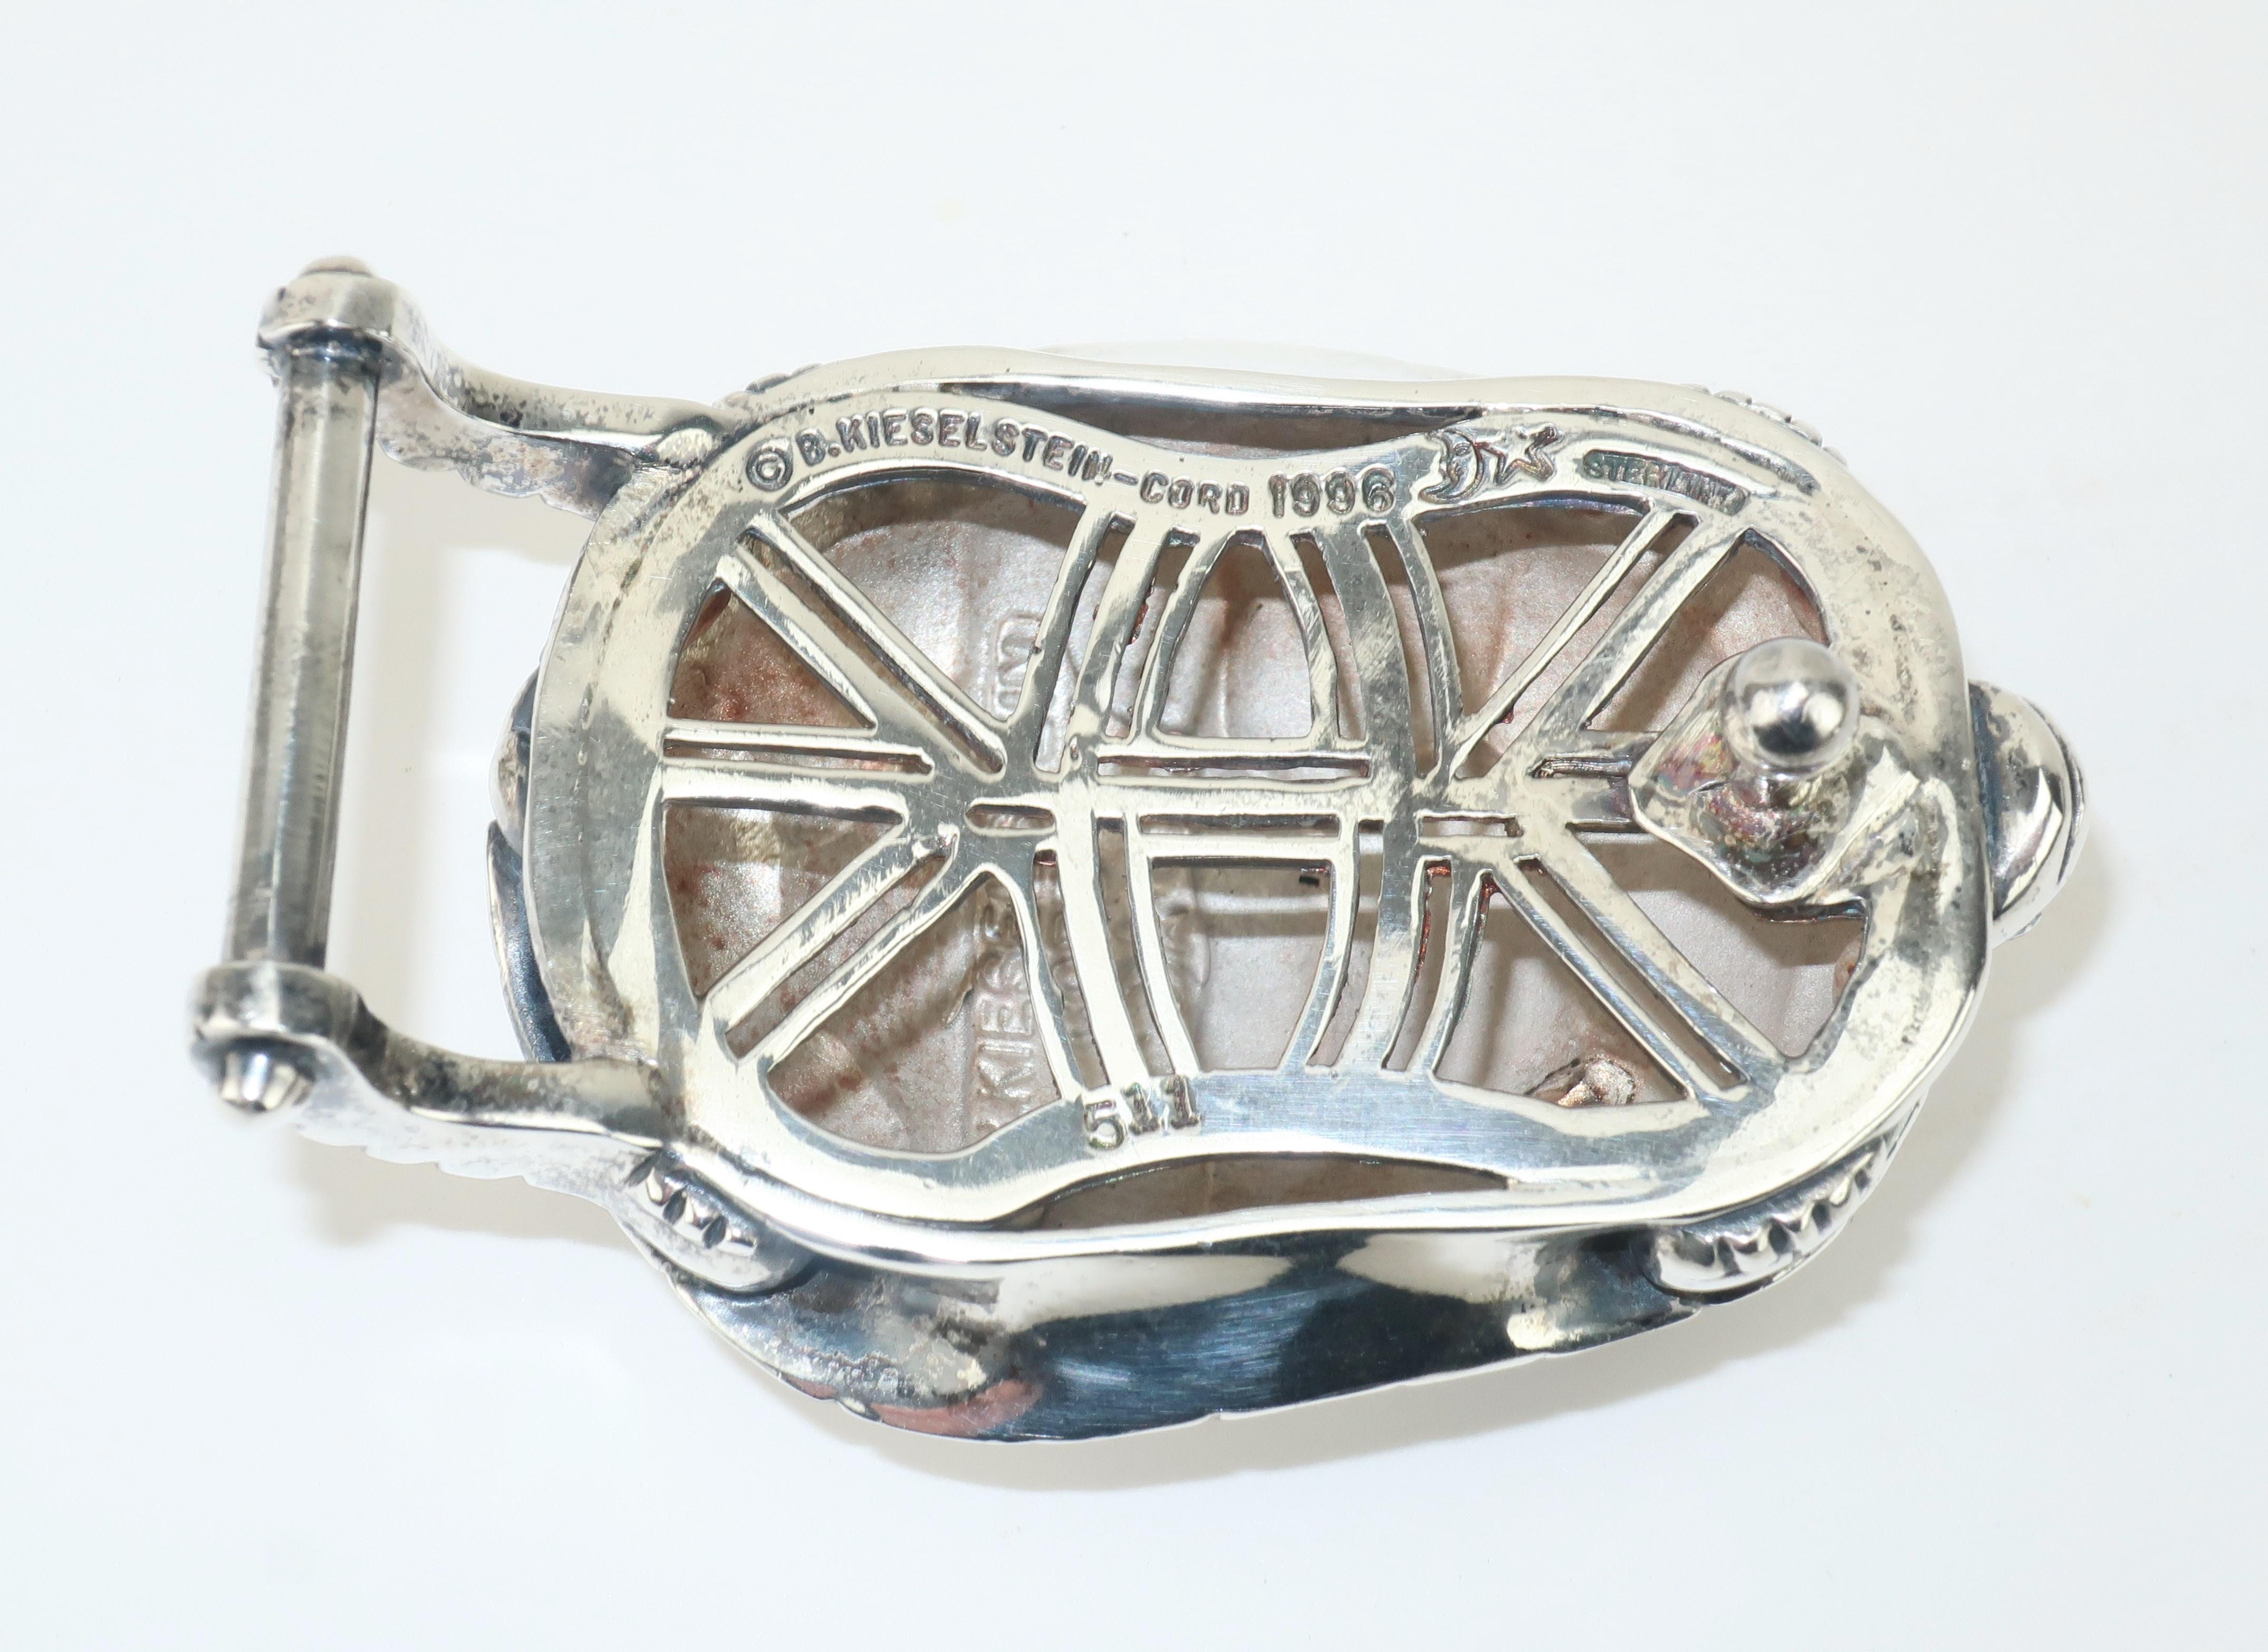 Barry Kieselstein Cord Sterling Silver Turtle Buckle & Belt, 1996 1